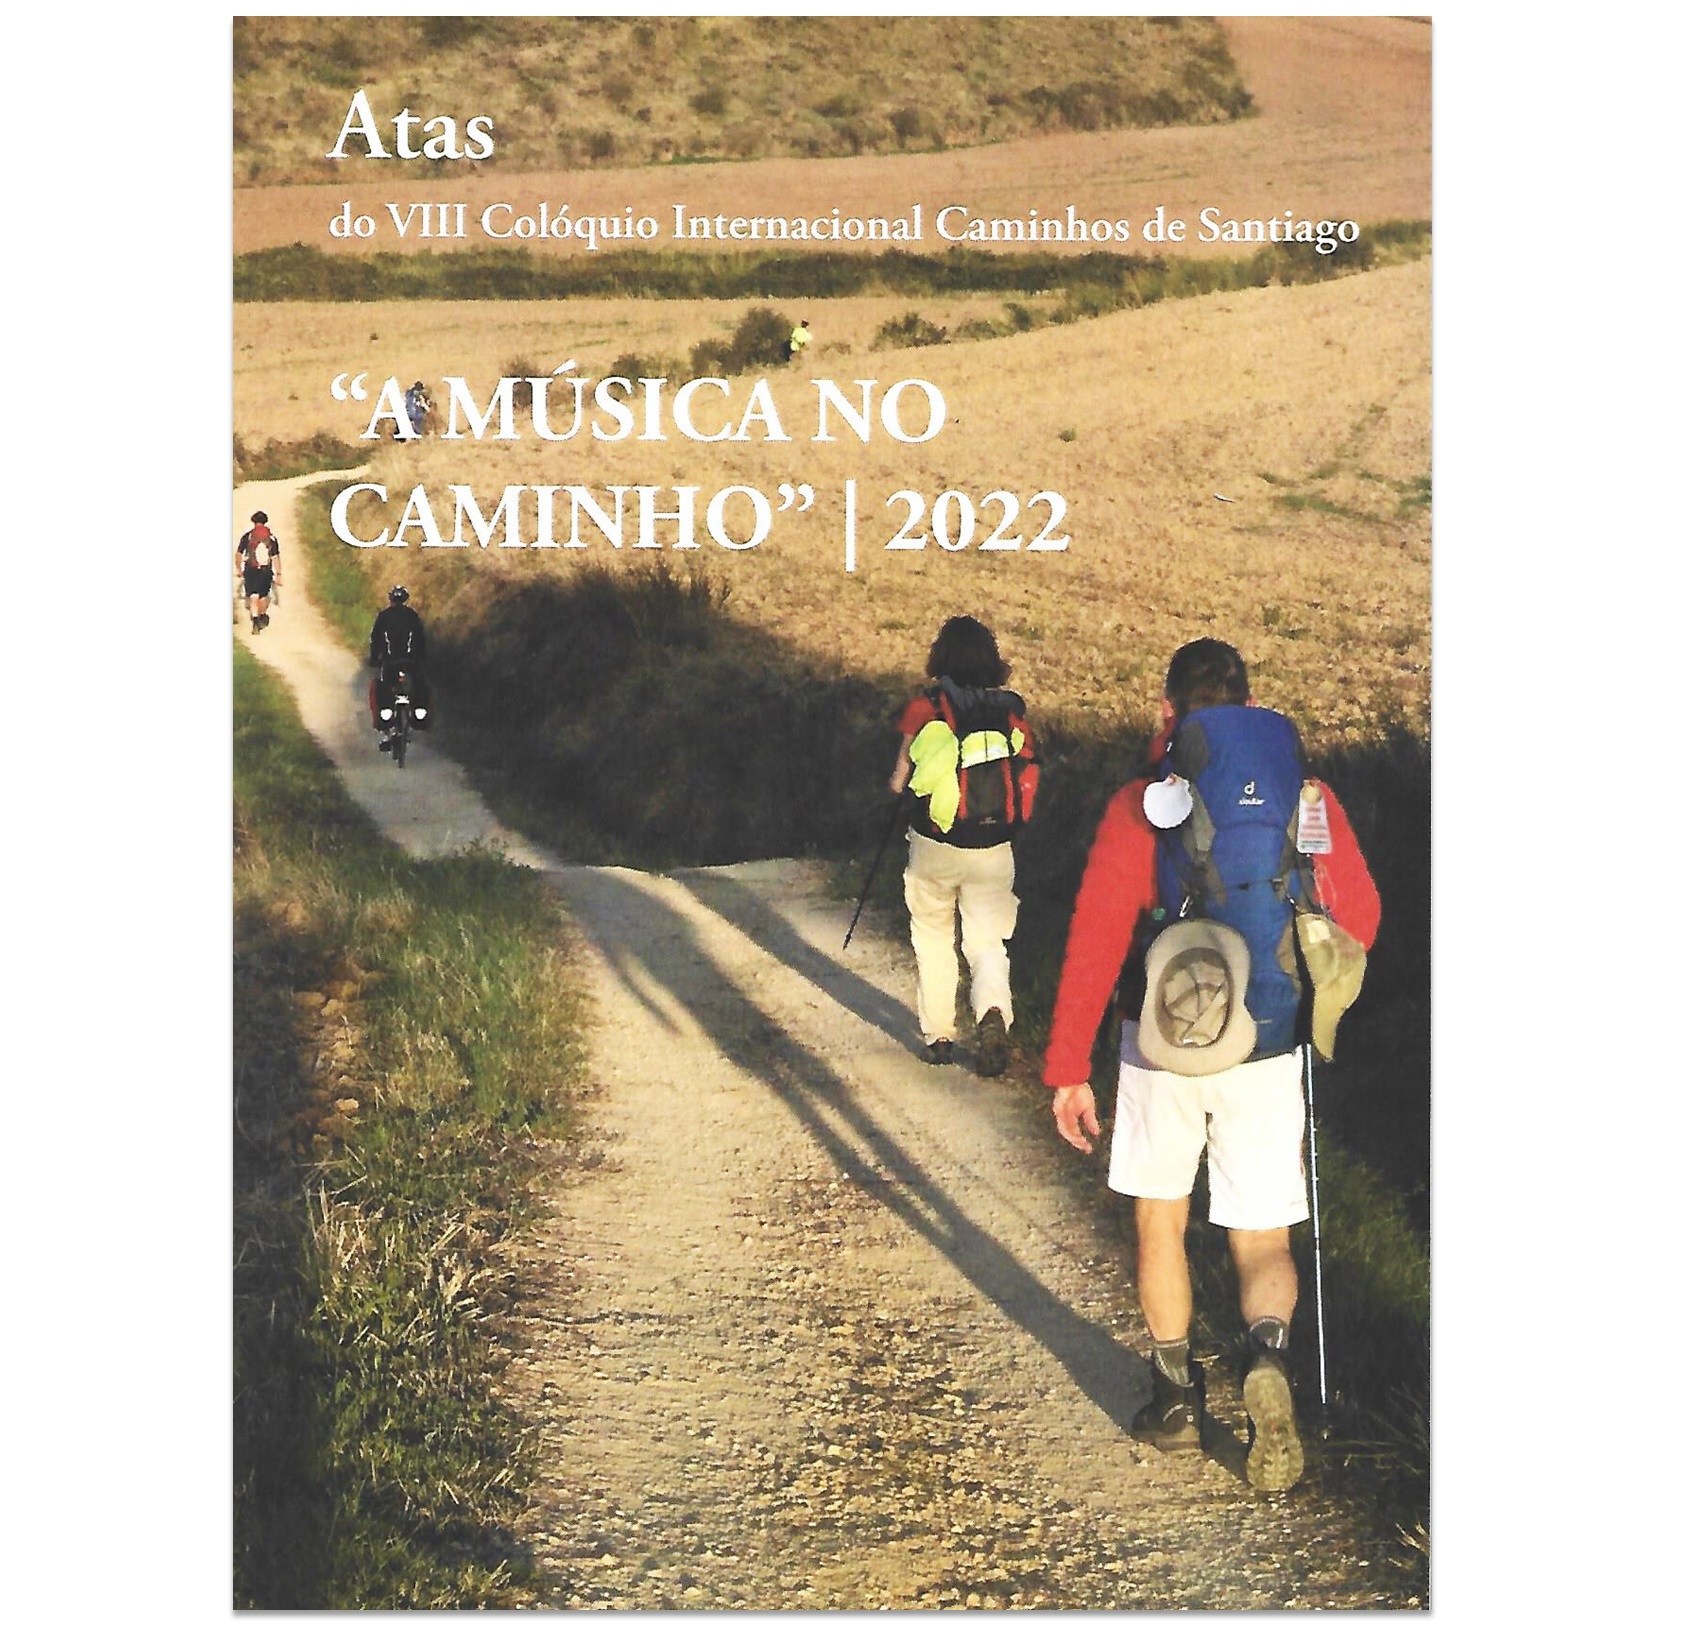 "A MÚSICA NO CAMINHO": CAMINHOS DE SANTIAGO,